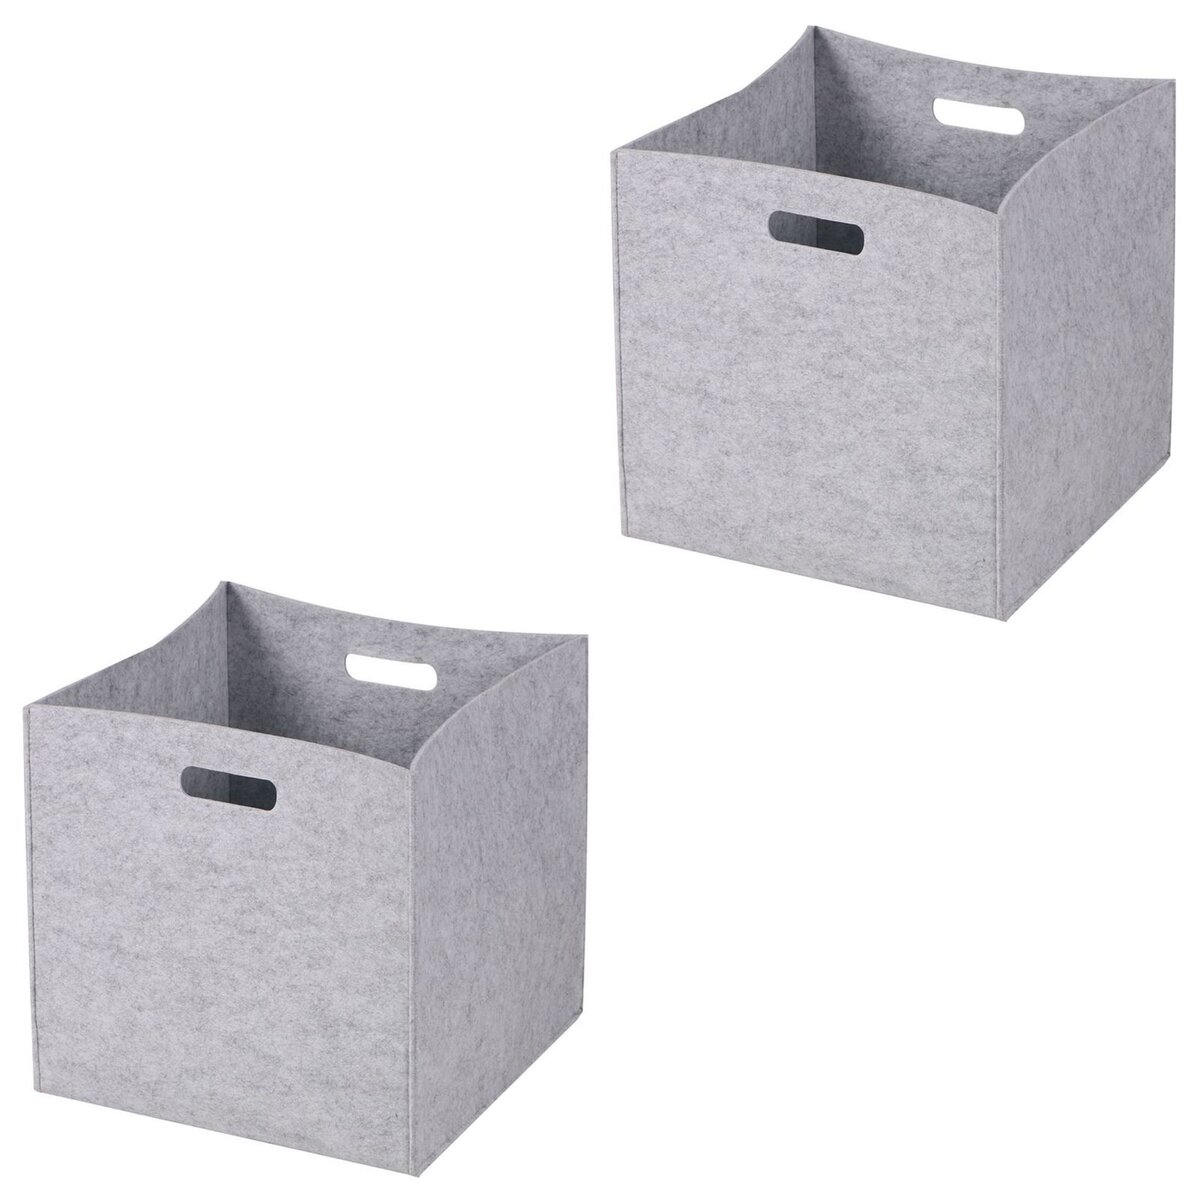 IDIMEX Lot de 2 boites de rangement en feutrine gris FELT, cube de rangement pliable, ouvert dim 32 x 32 x 32 cm, design moderne